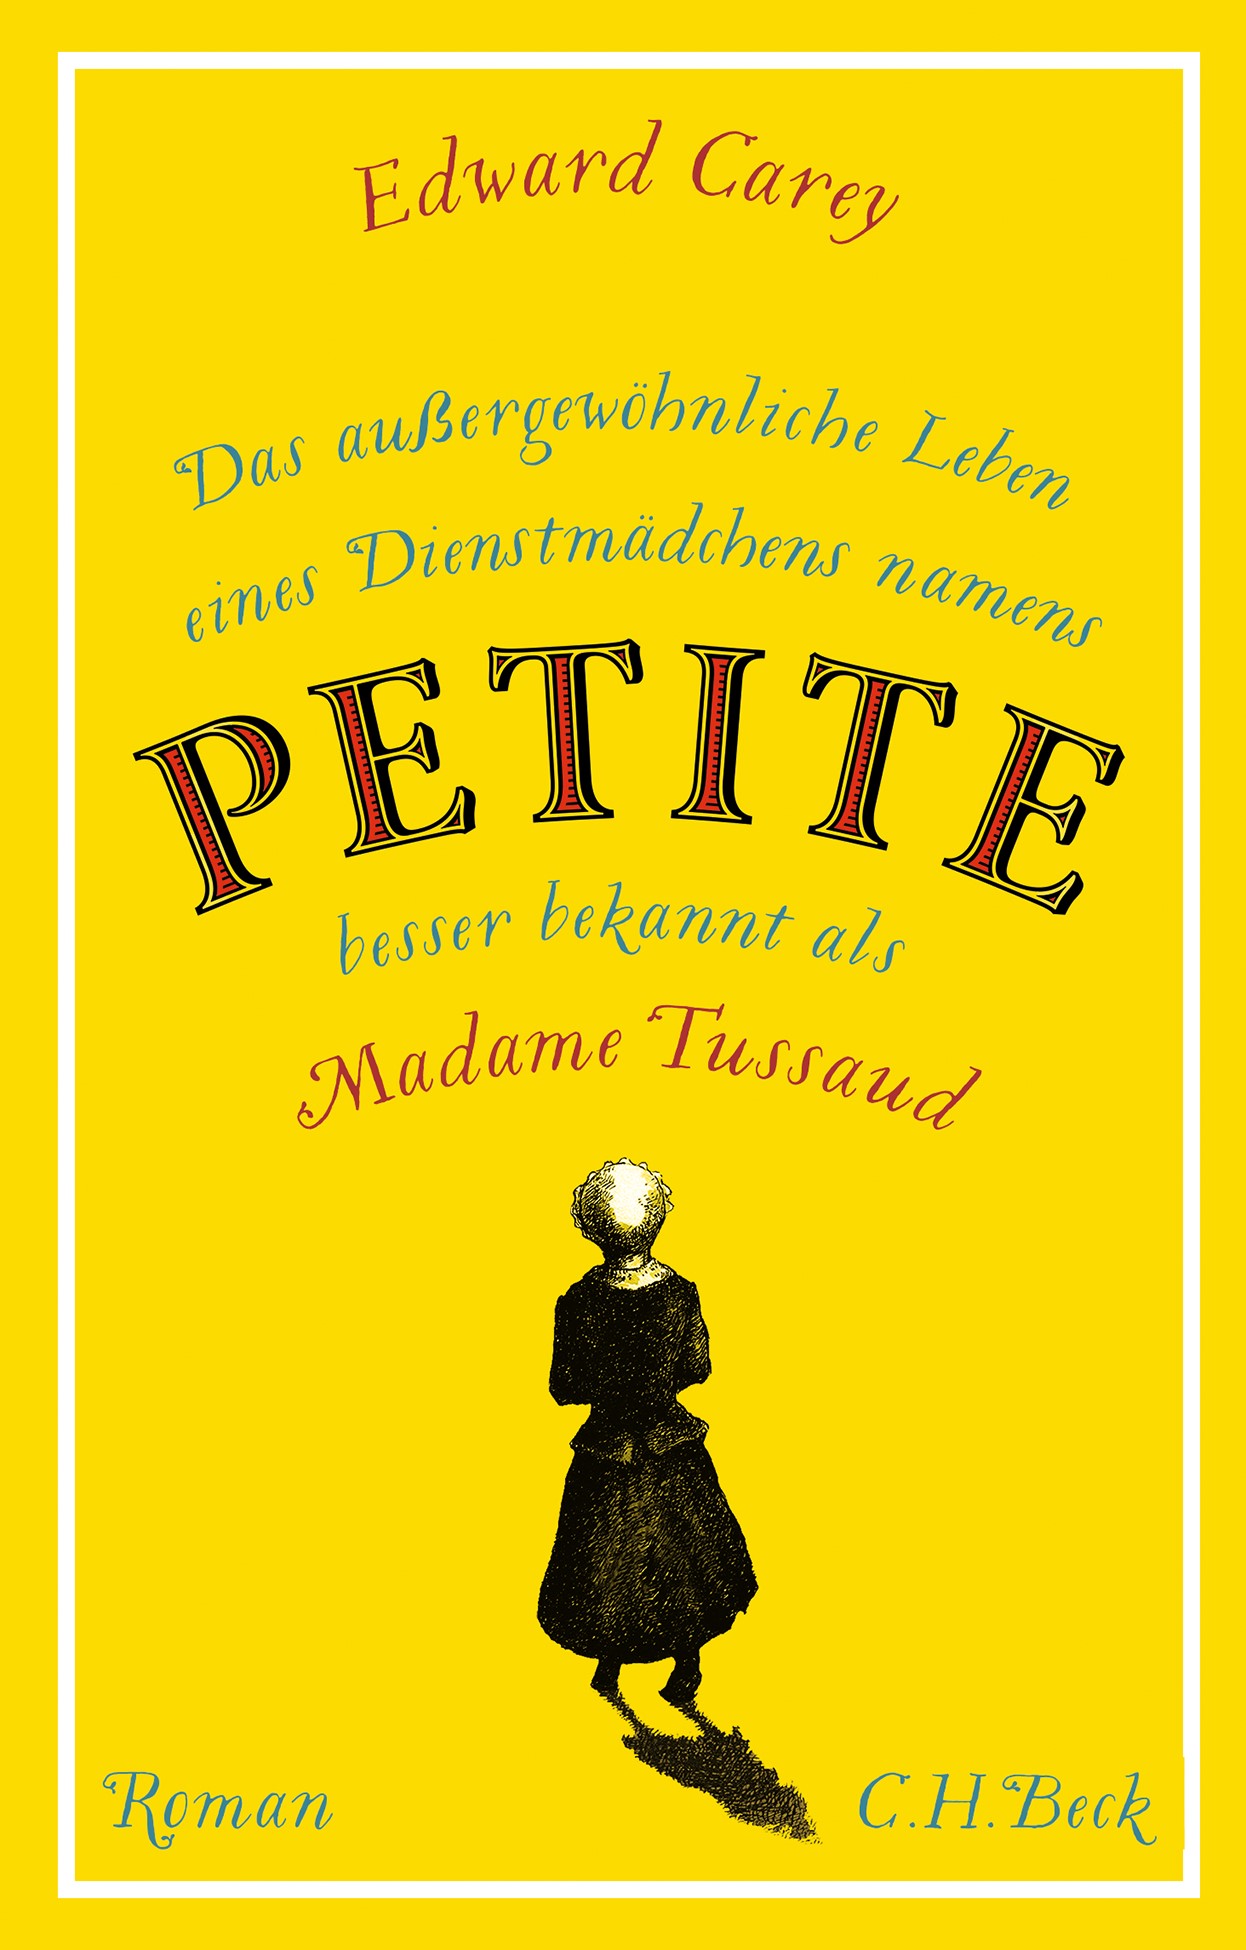 Cover: Carey, Edward, Das außergewöhnliche Leben eines Dienstmädchens namens PETITE, besser bekannt als Madame Tussaud